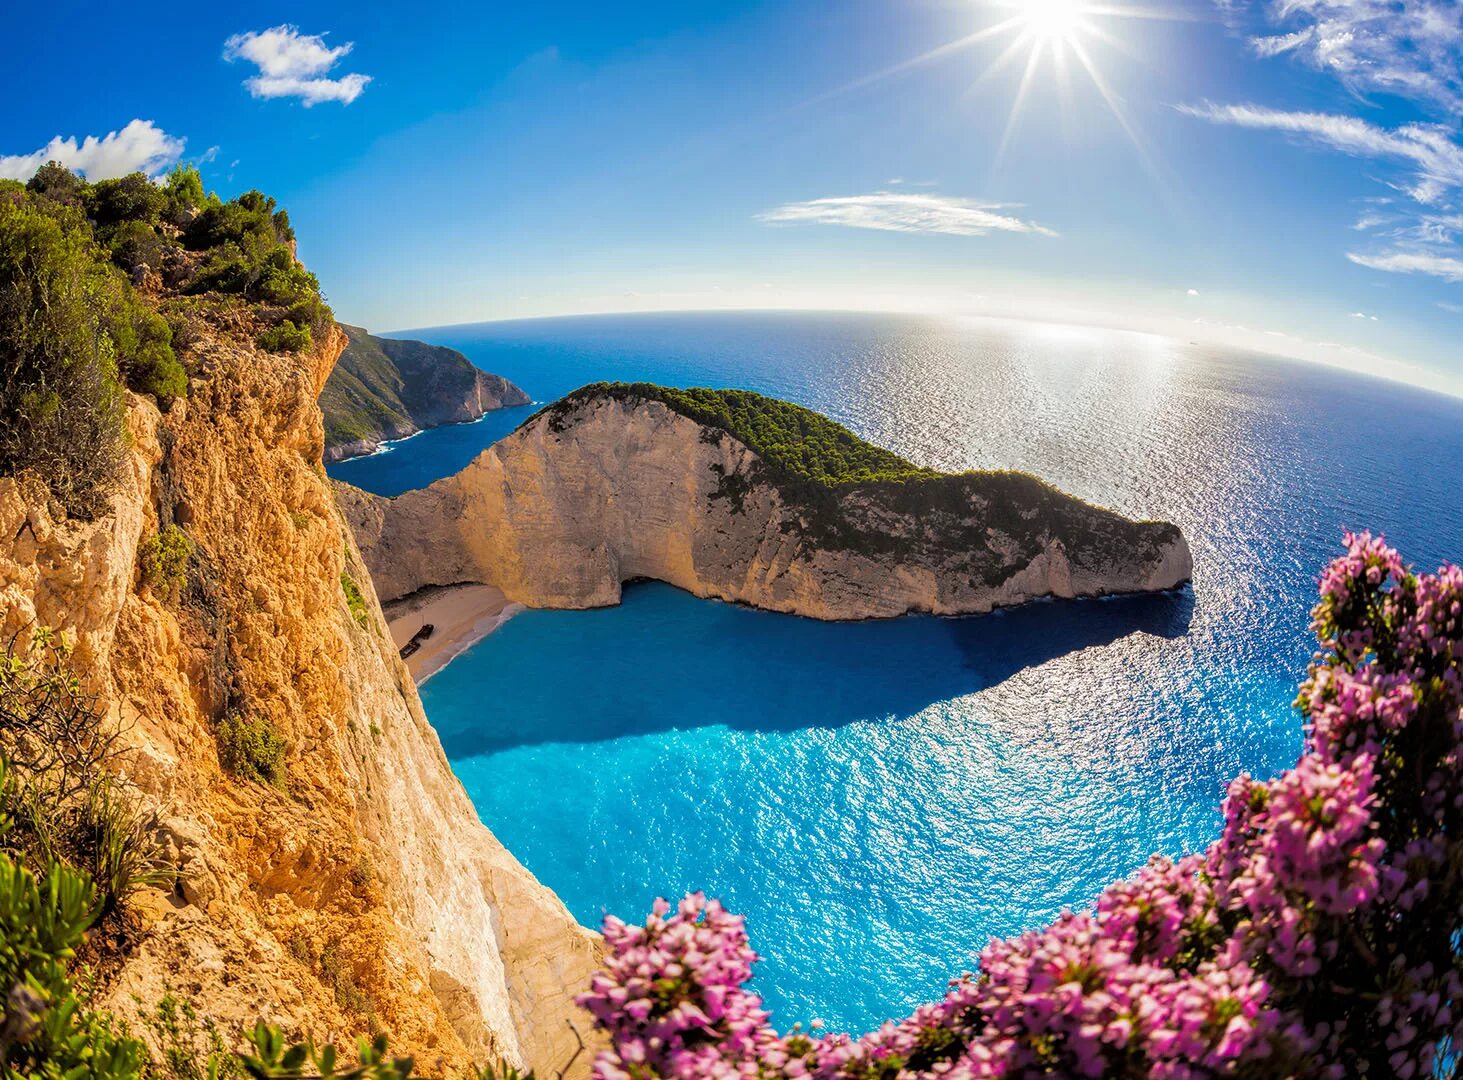 Остров Закинф. Греция Лагуна Навагио. Закинф Греция голубая Лагуна. Бухта Навагио Греция. Красивые места пляжи